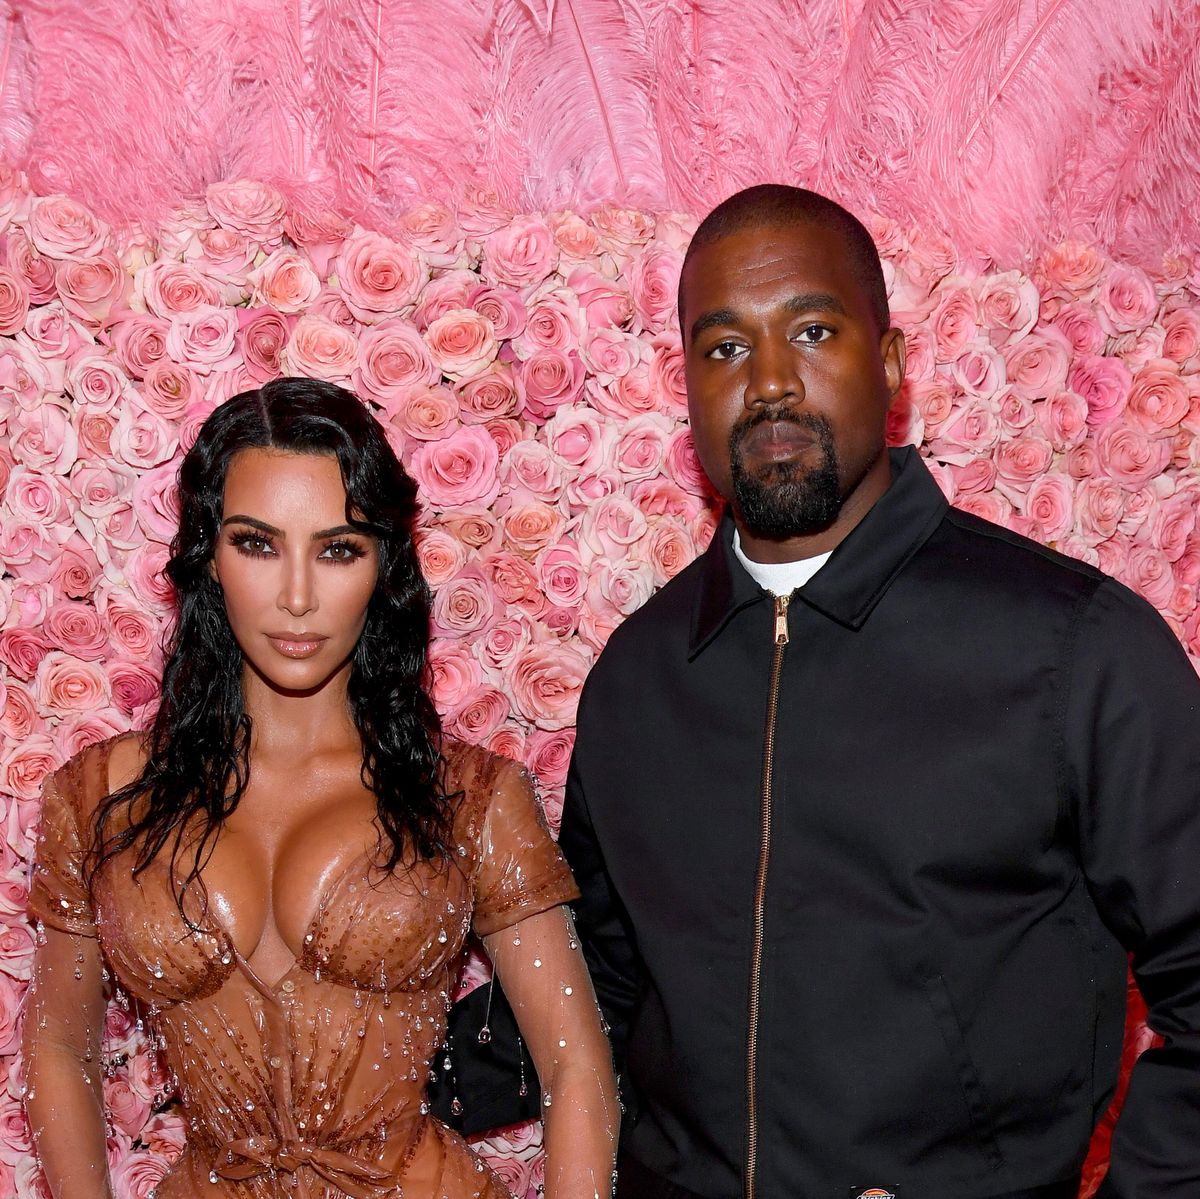 Kim Kardashian Com Video Xnxxx - Kanye West Opens Up About Sex Addiction And Kim Kardashian Marriage